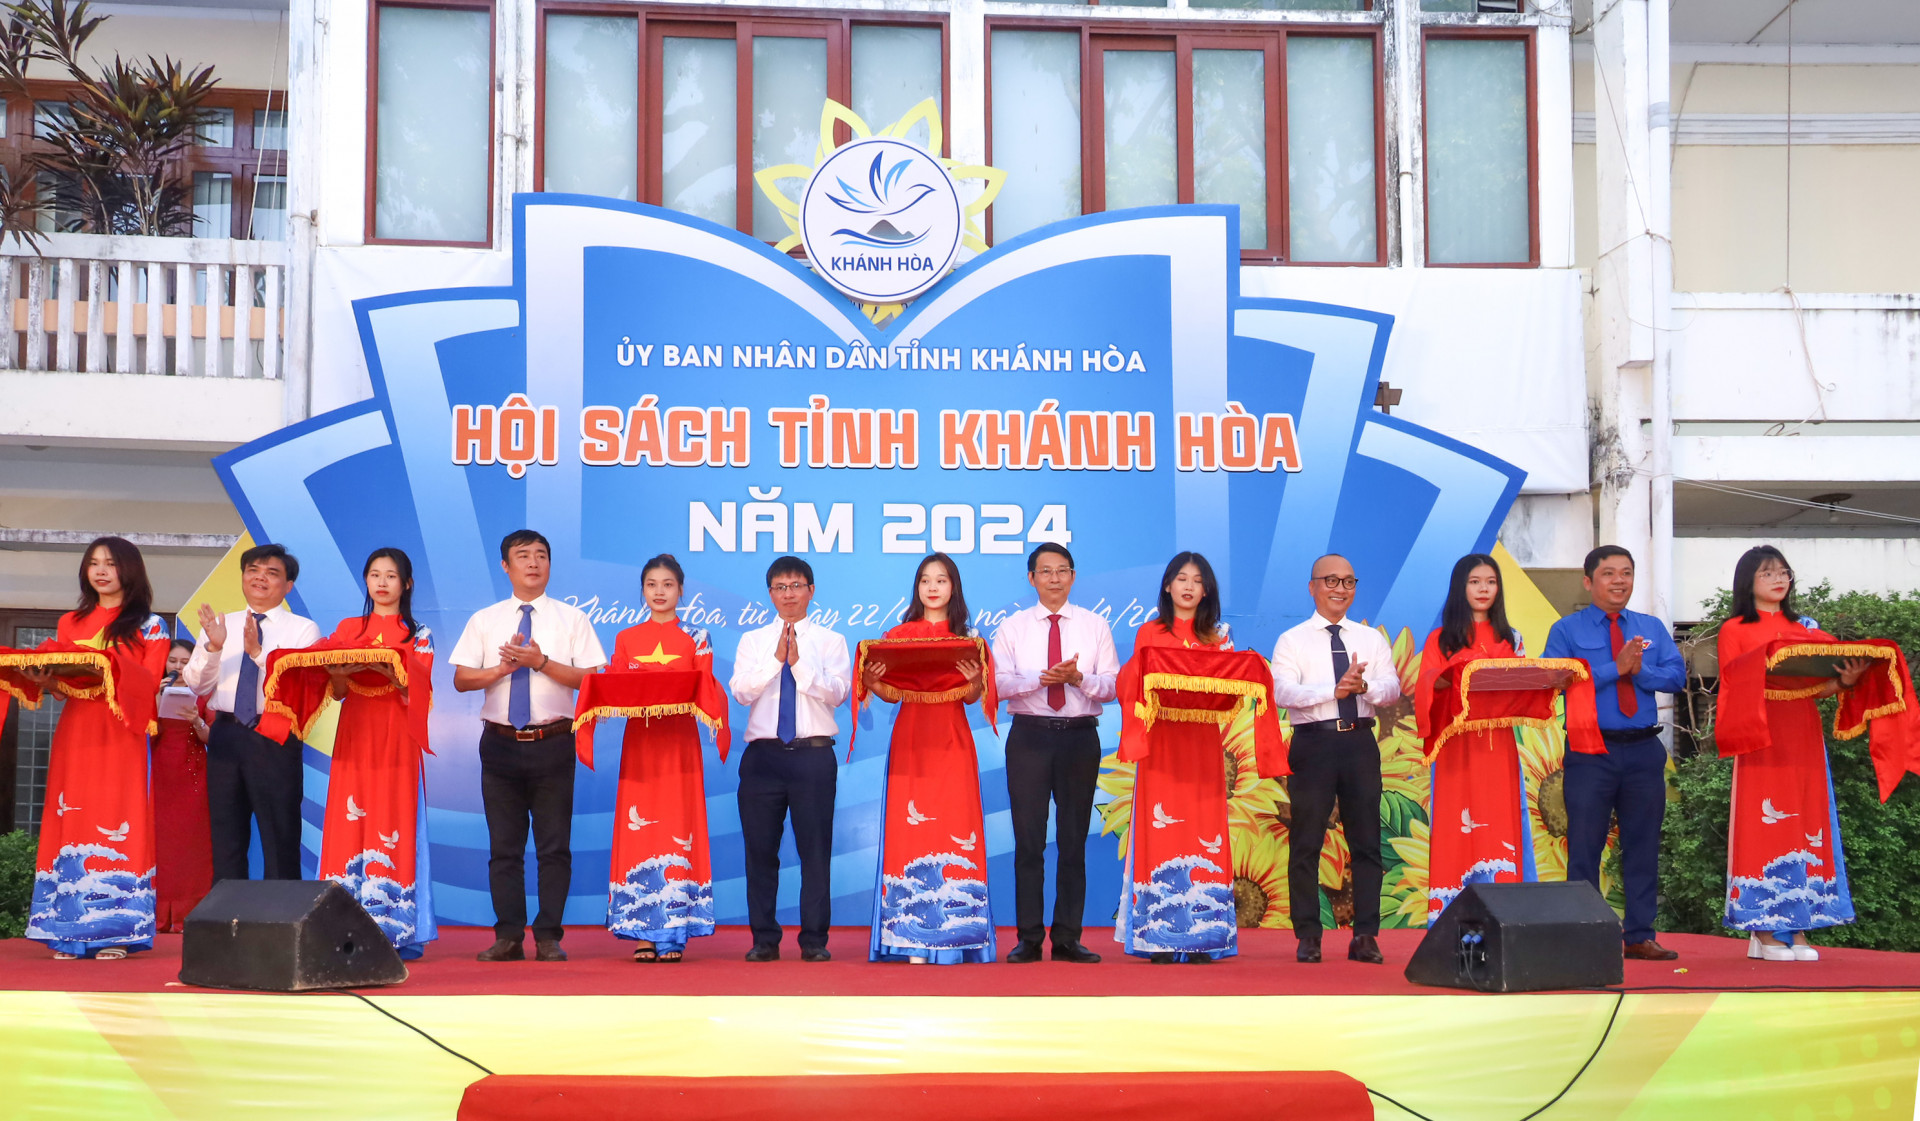 Khanh Hoa book fair 2024 opens